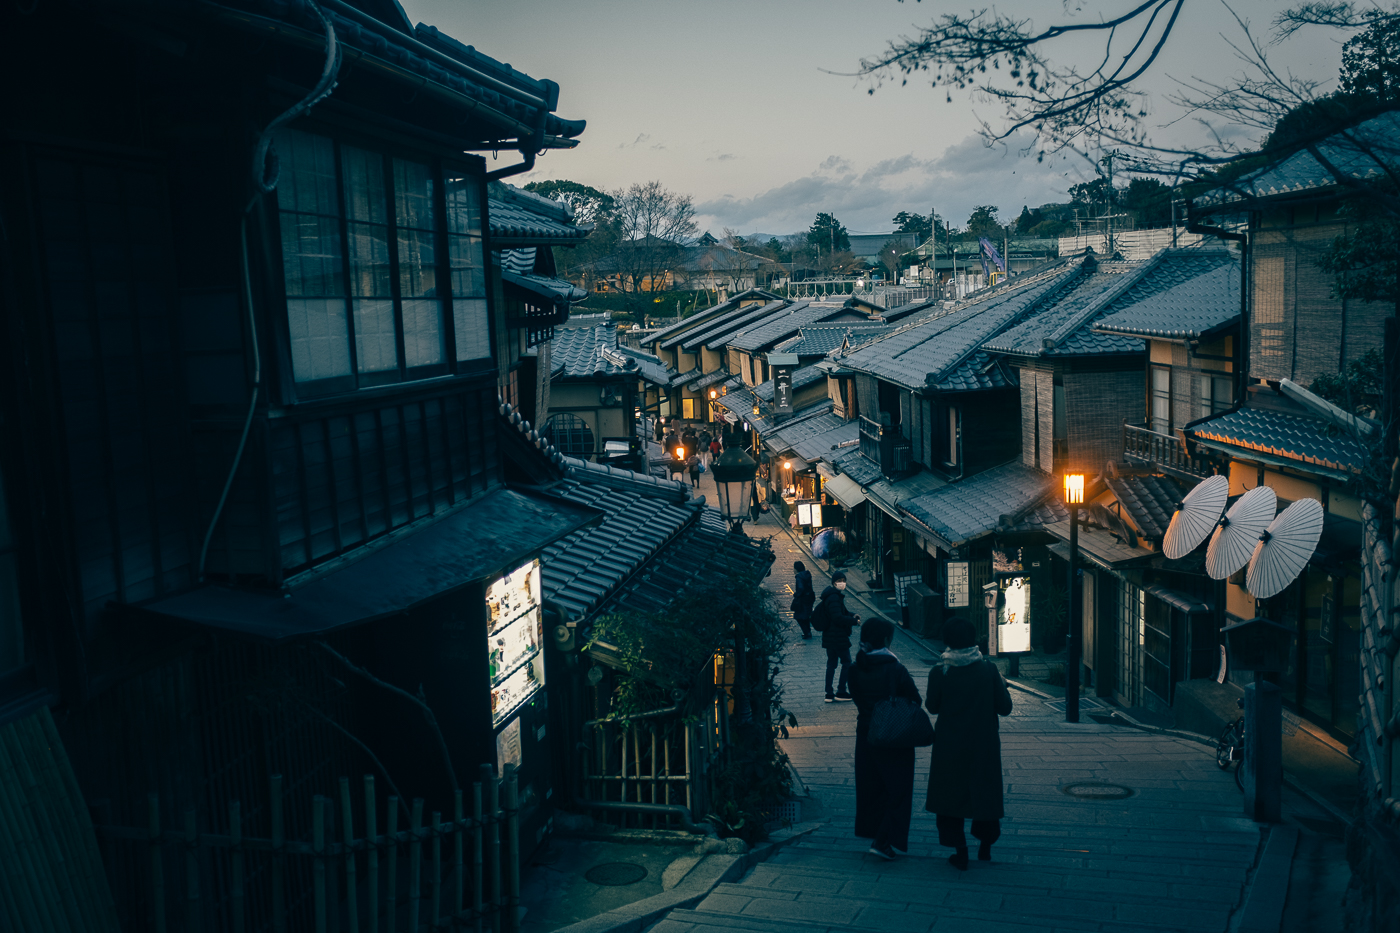 Kyoto traditionnel, les rues deviennent calment la nuit et révèlent tout leur splendeur